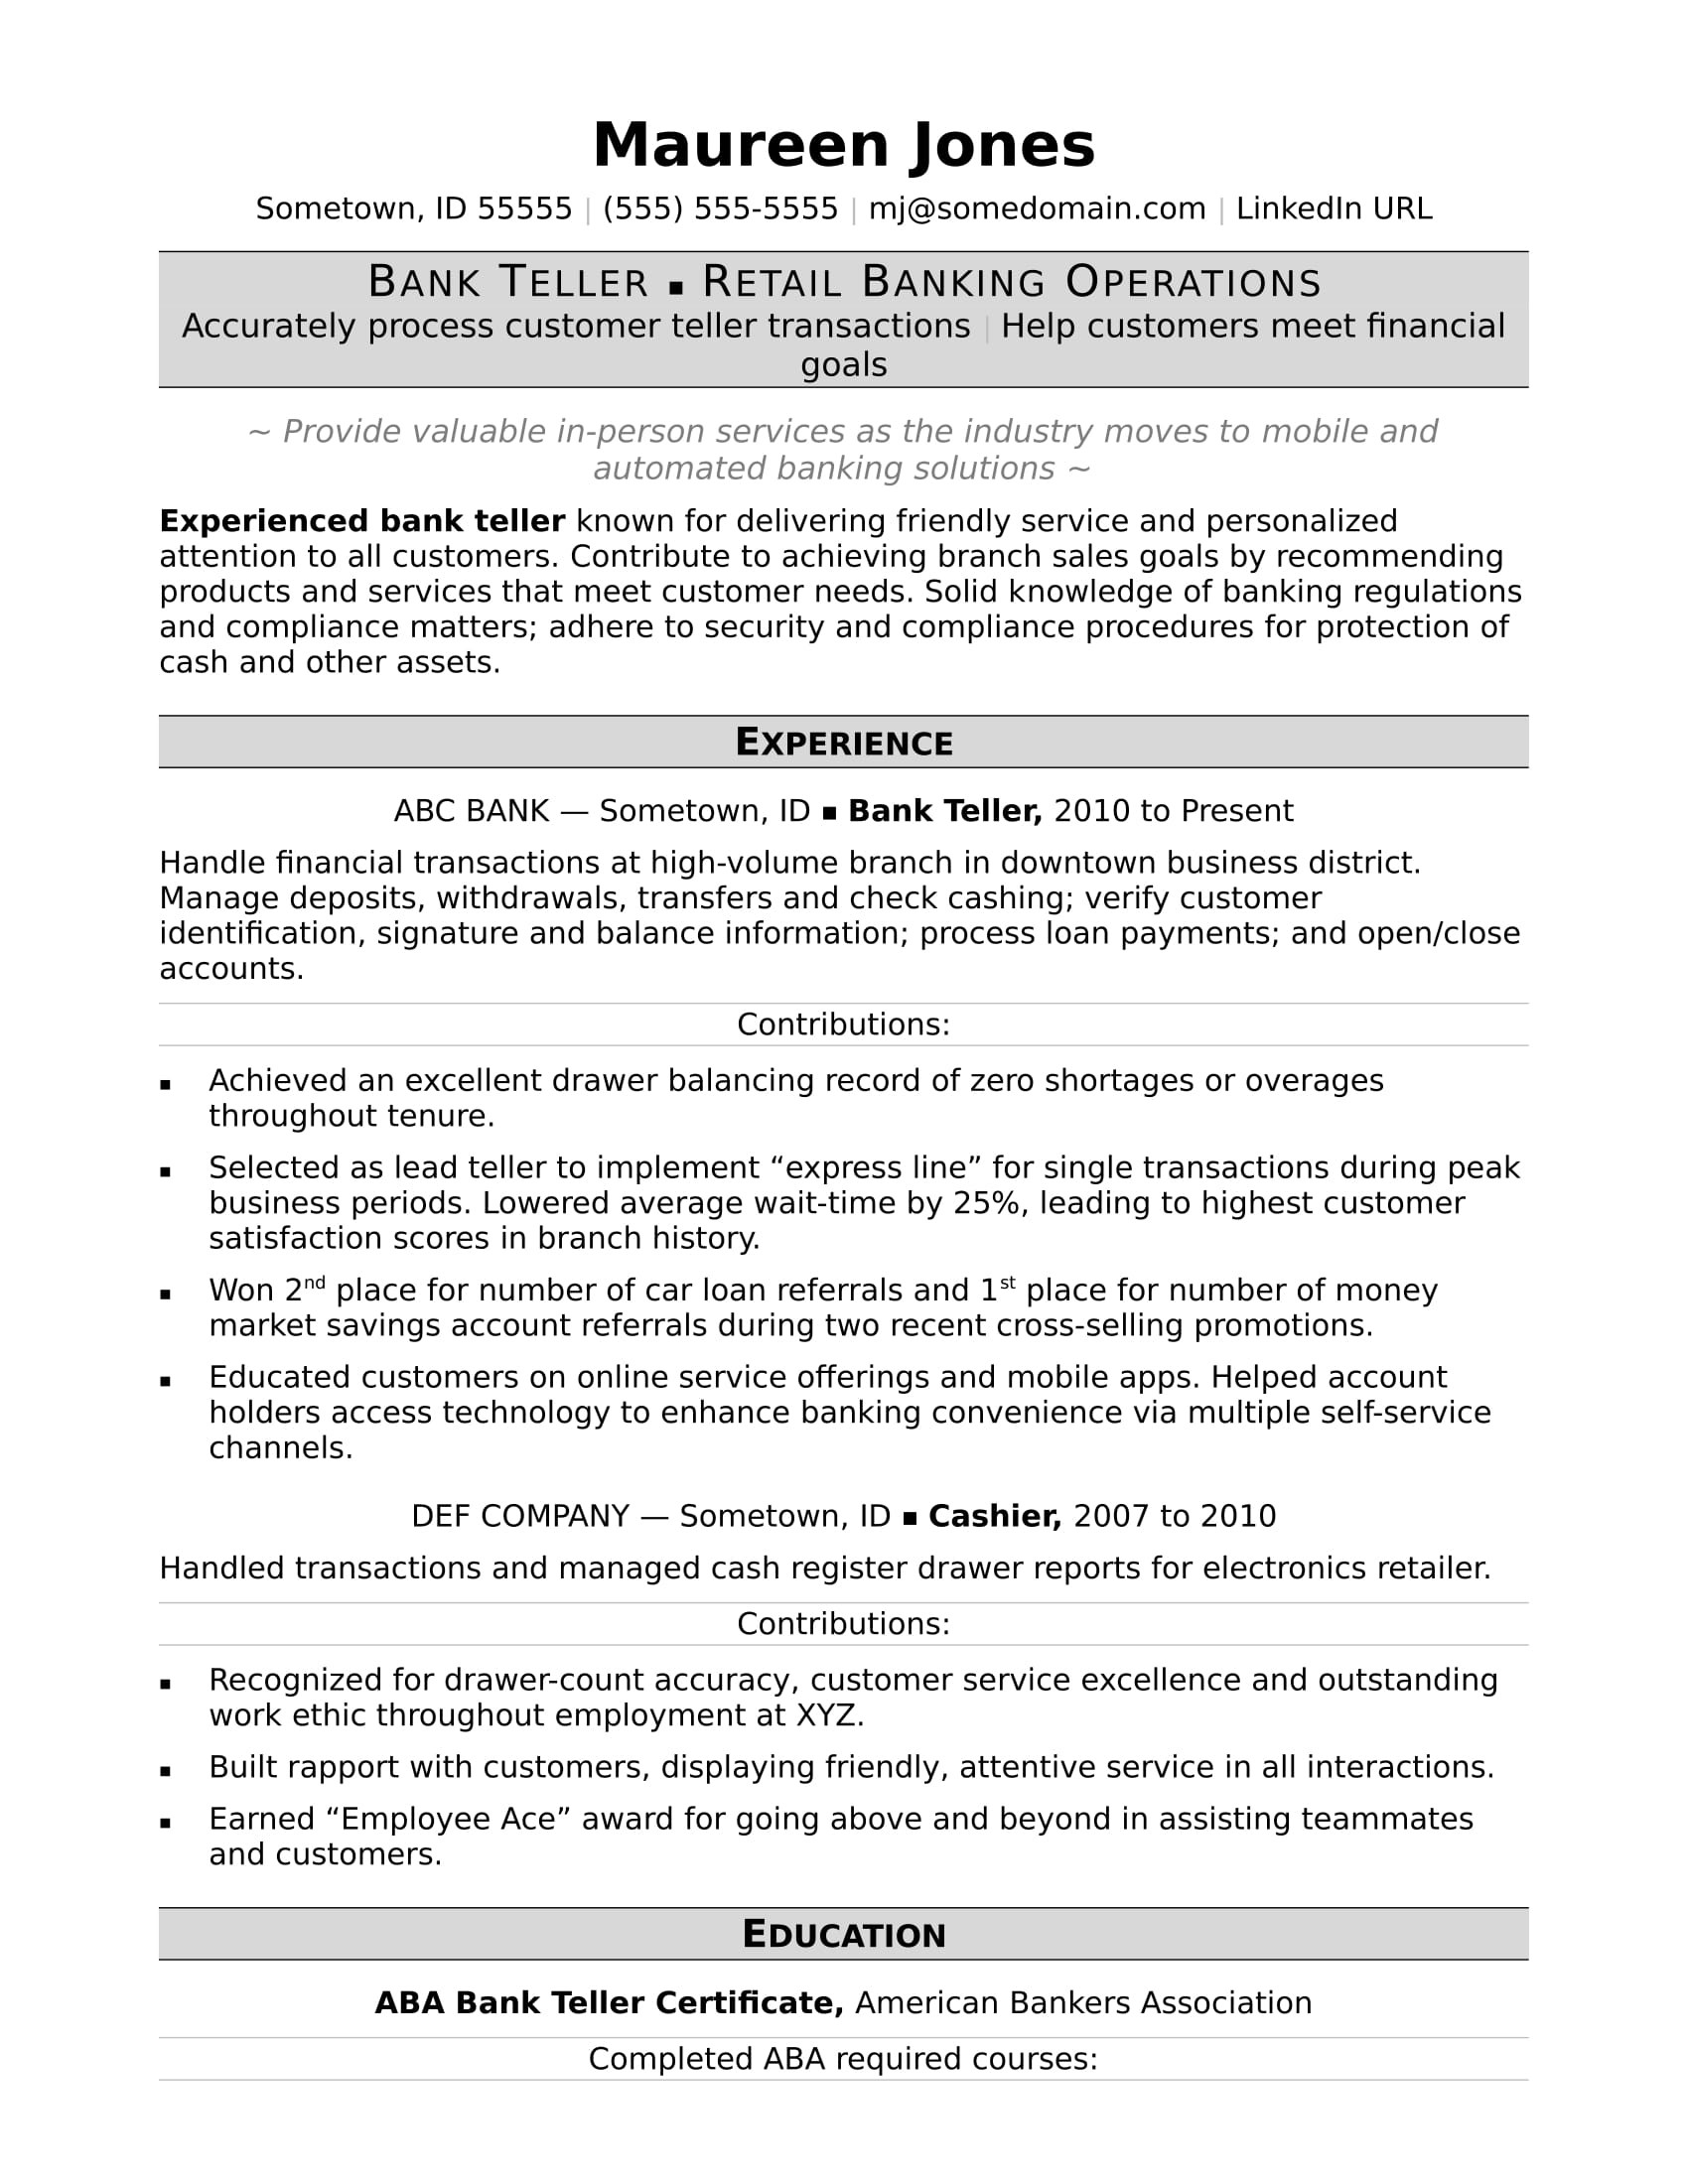 Sample Resumes for Bank Teller Positions Bank Teller Resume Sample